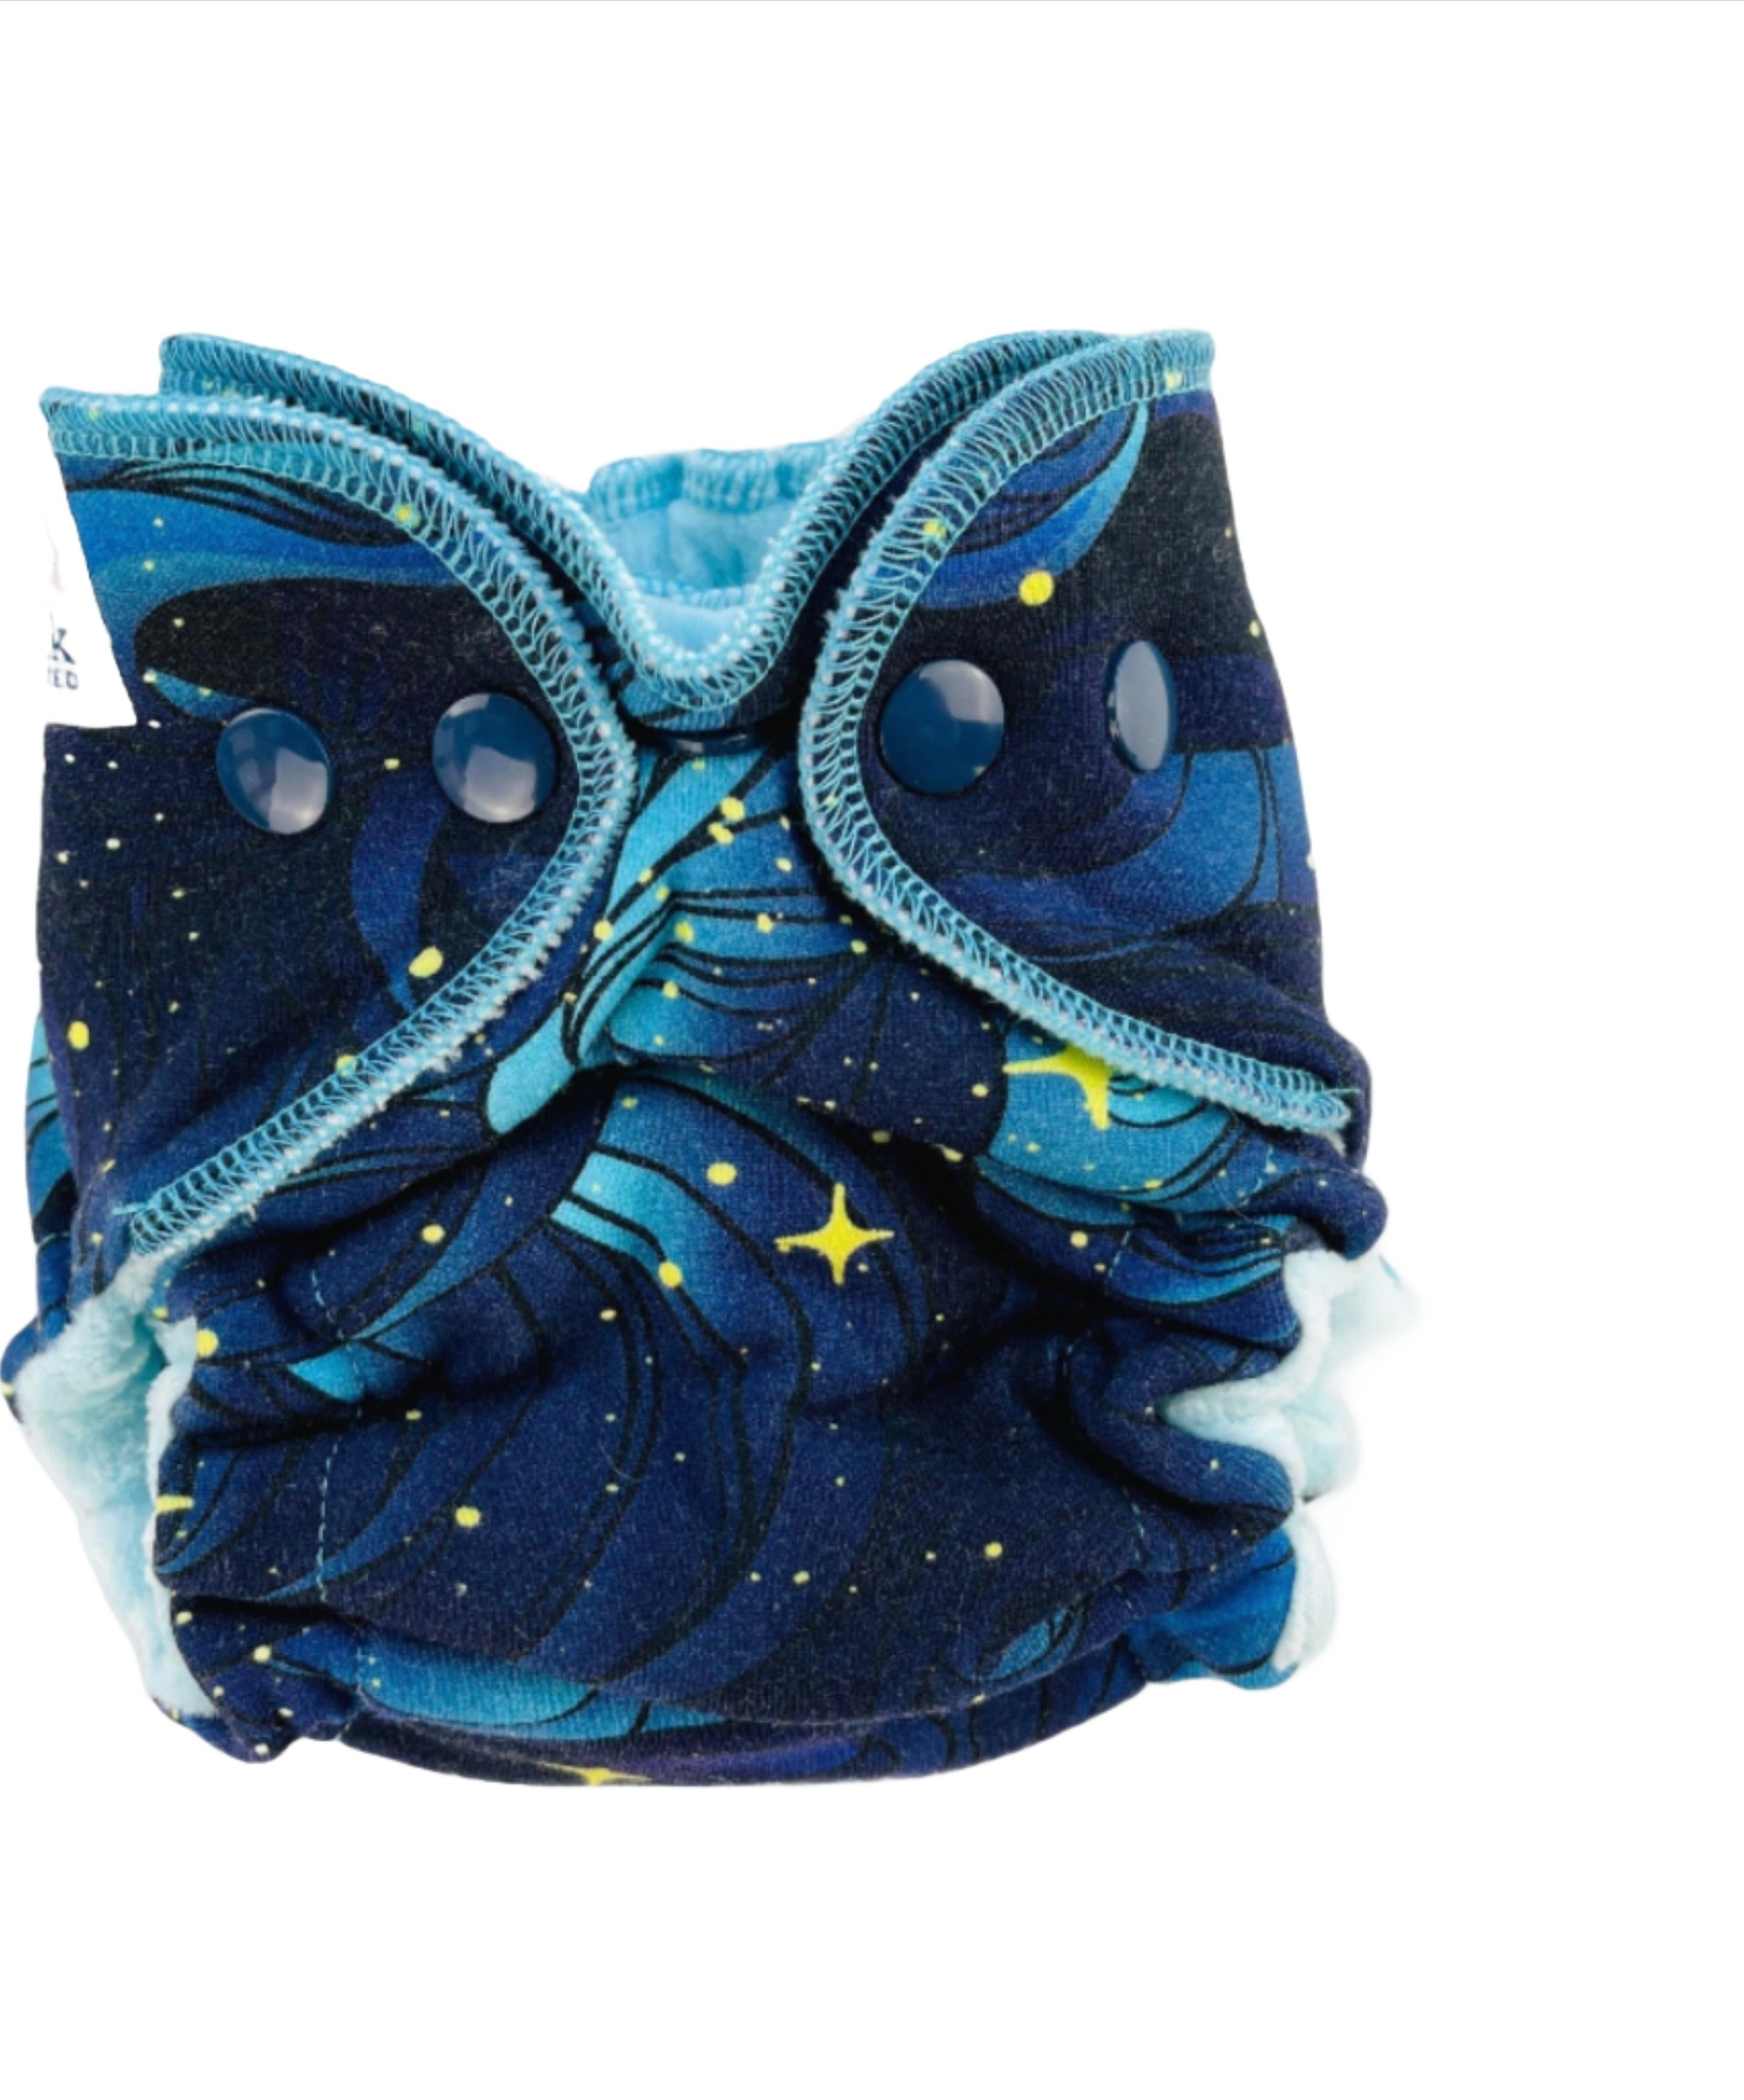 Lilly & Frank Newborn Cloth Diaper Night Stars Newborn Cloth Diaper - Fitted - Comfort Serged